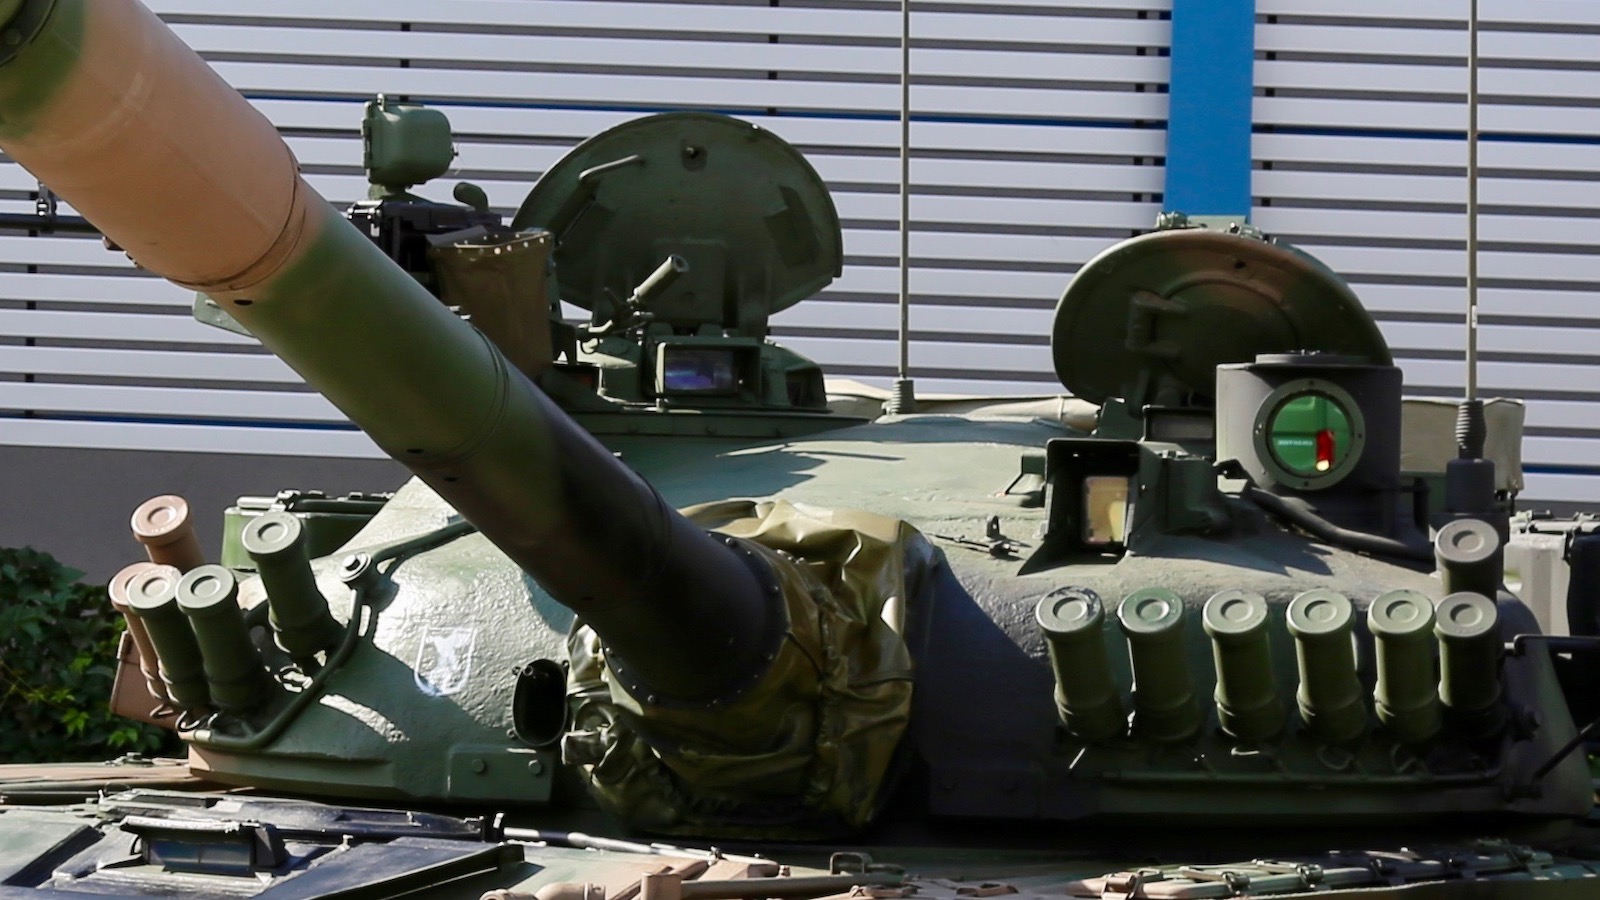 Wieża zmodyfikowanego T-72M1R wyposażonego w przyrządy obserwacyjne PCO, w tym kamerę termowizyjną. Fot. J.Sabak/Defence24.pl.